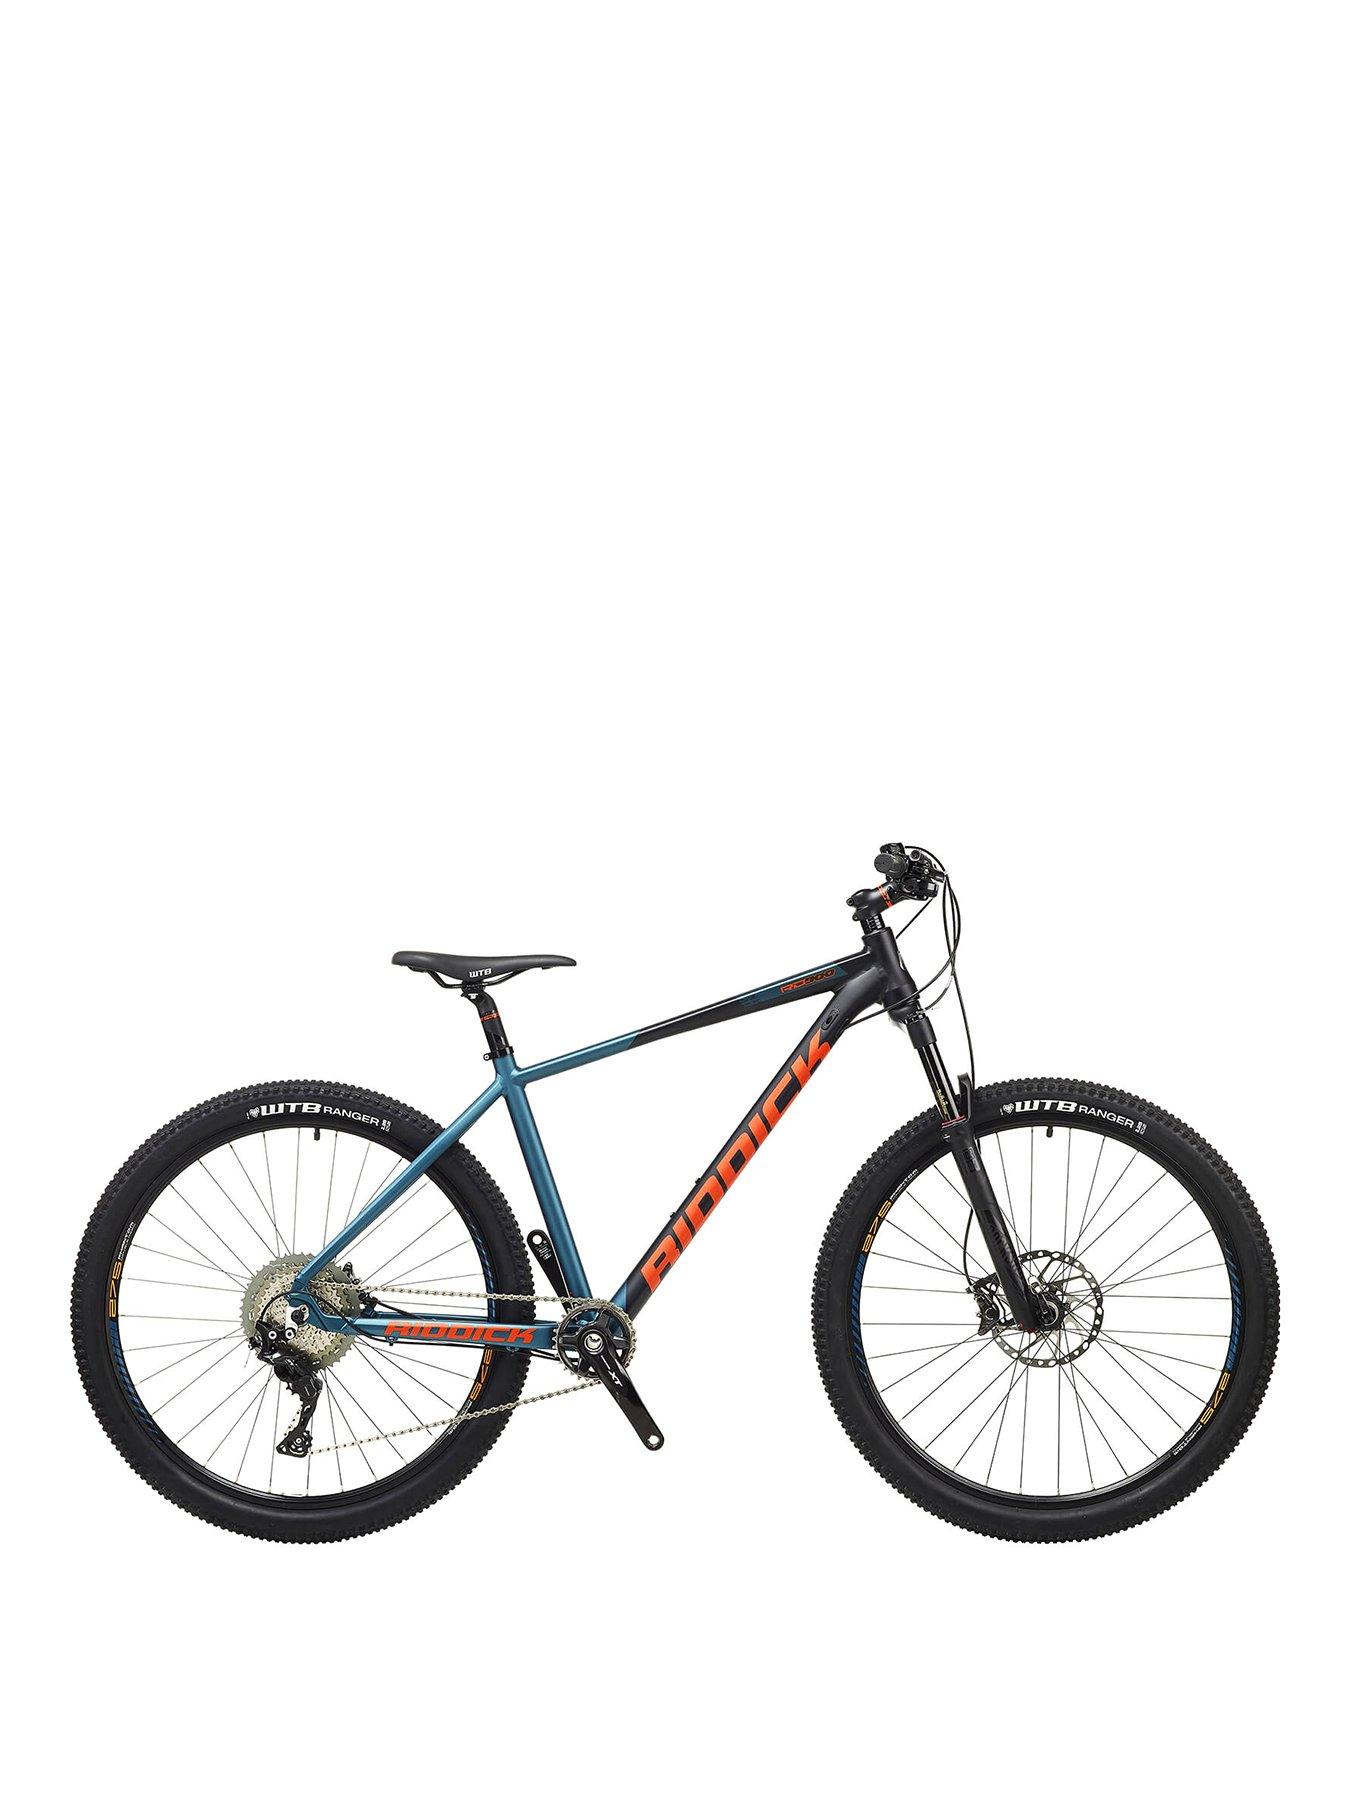 mountain bike 18 inch frame